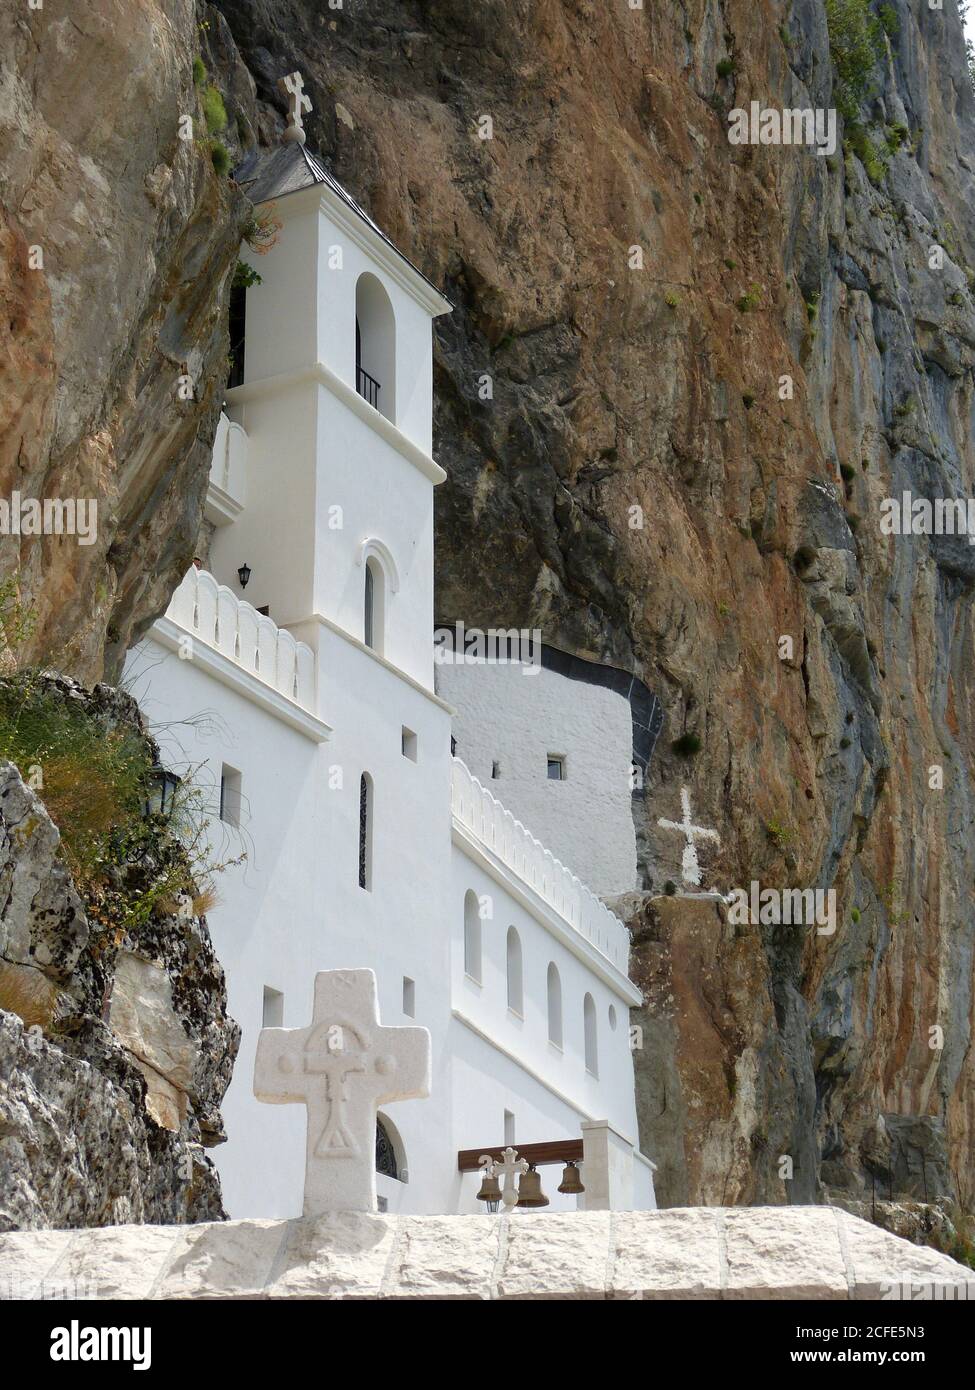 Ostrog est un monastère de l'église orthodoxe serbe situé sur un fond presque vertical de grande falaise. Magnifique temple blanc à la montagne. Banque D'Images